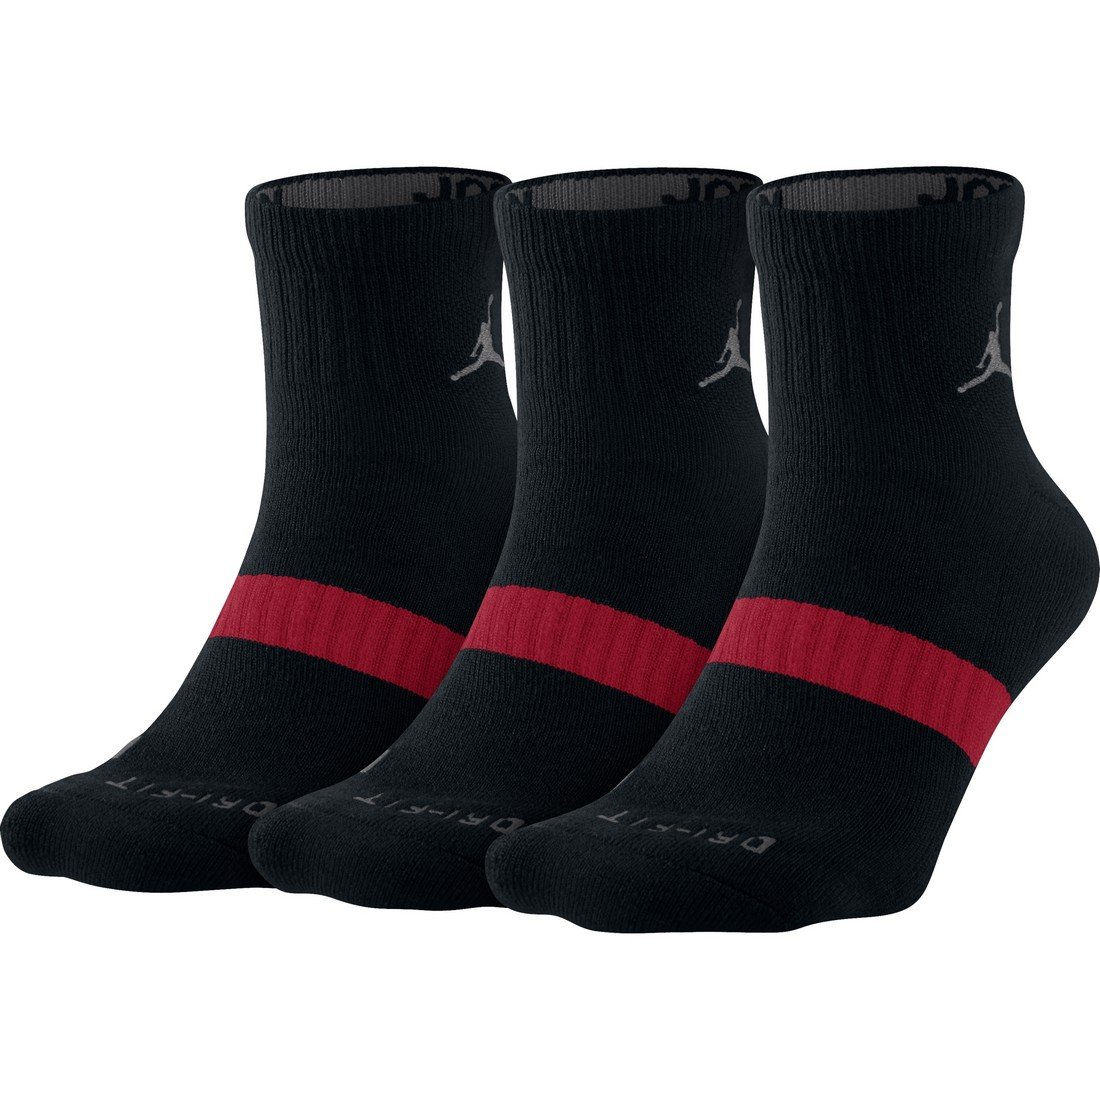 Nike Air Jordan Dri Fit Low Quarter Ankle Socks Black/Grey 3 Pair Pack